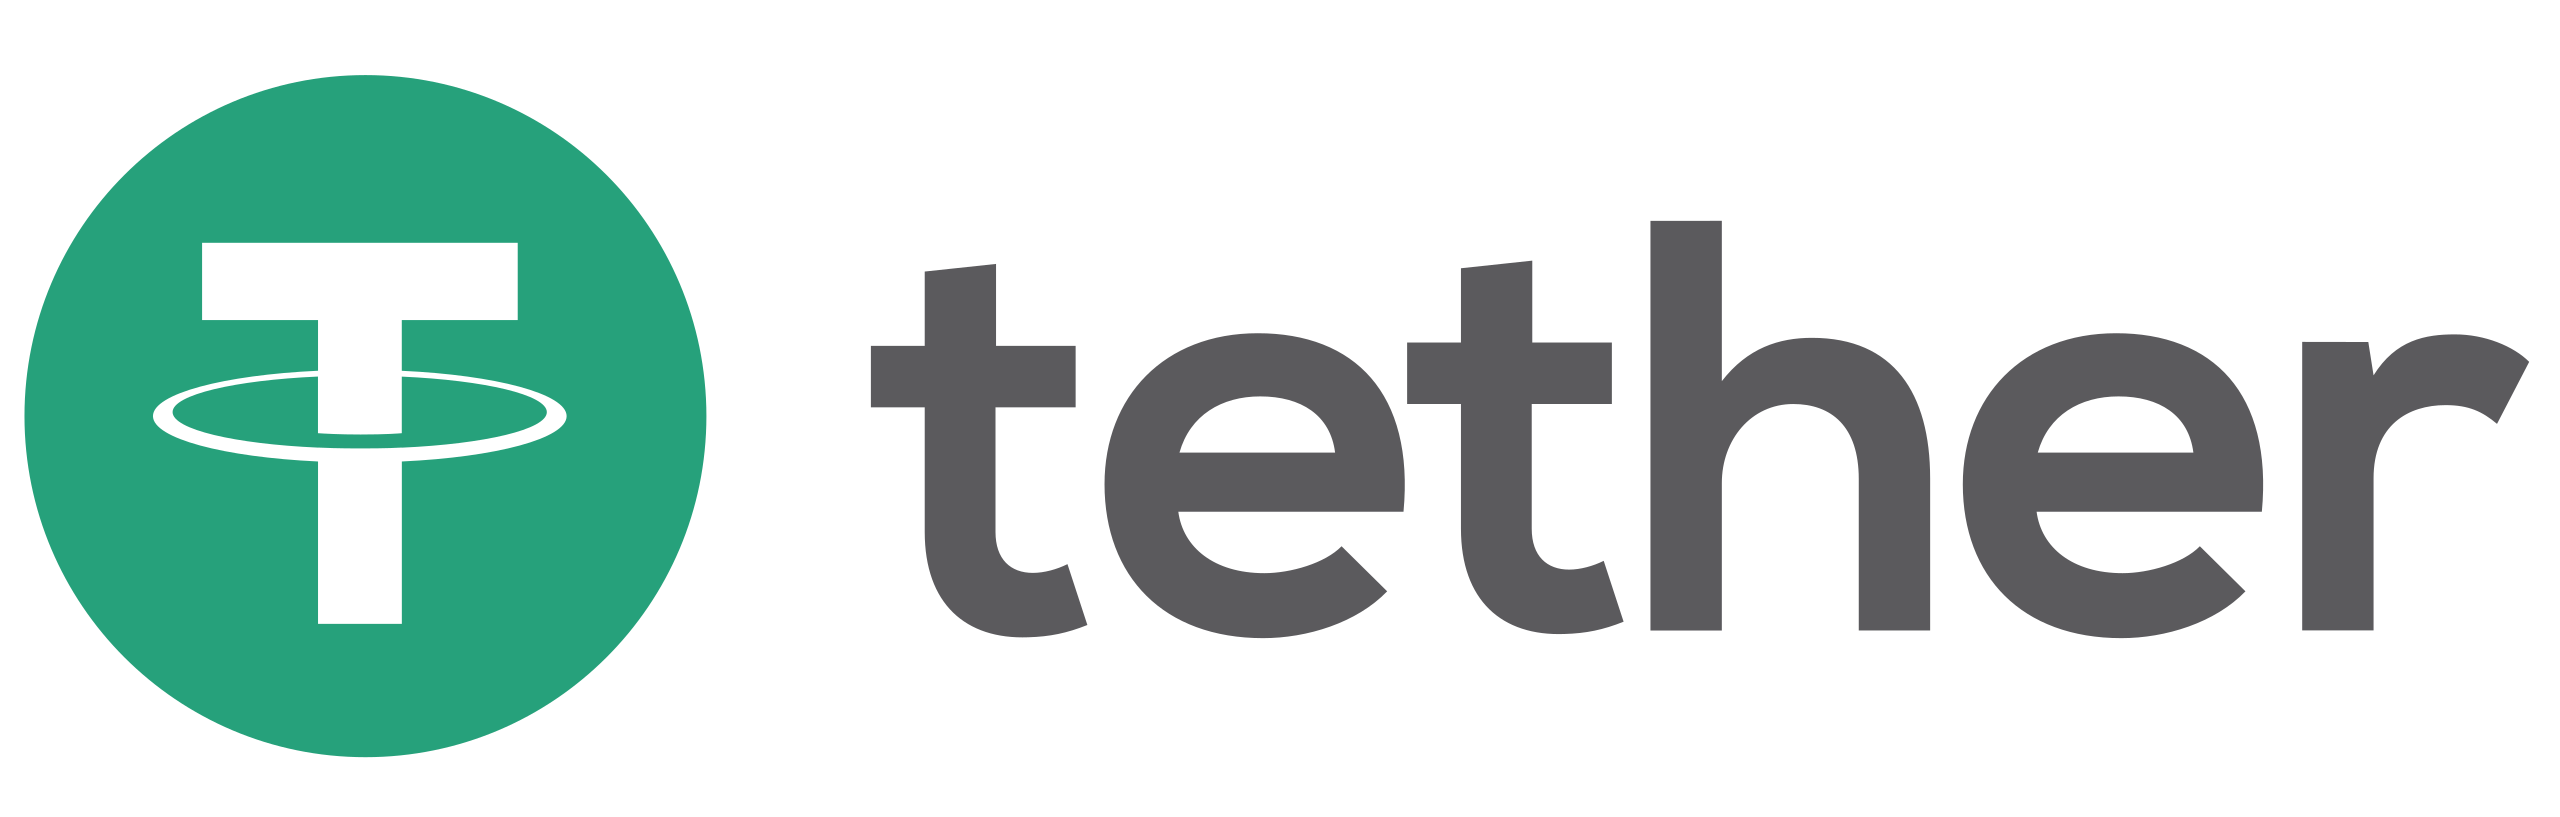 usdt-logo